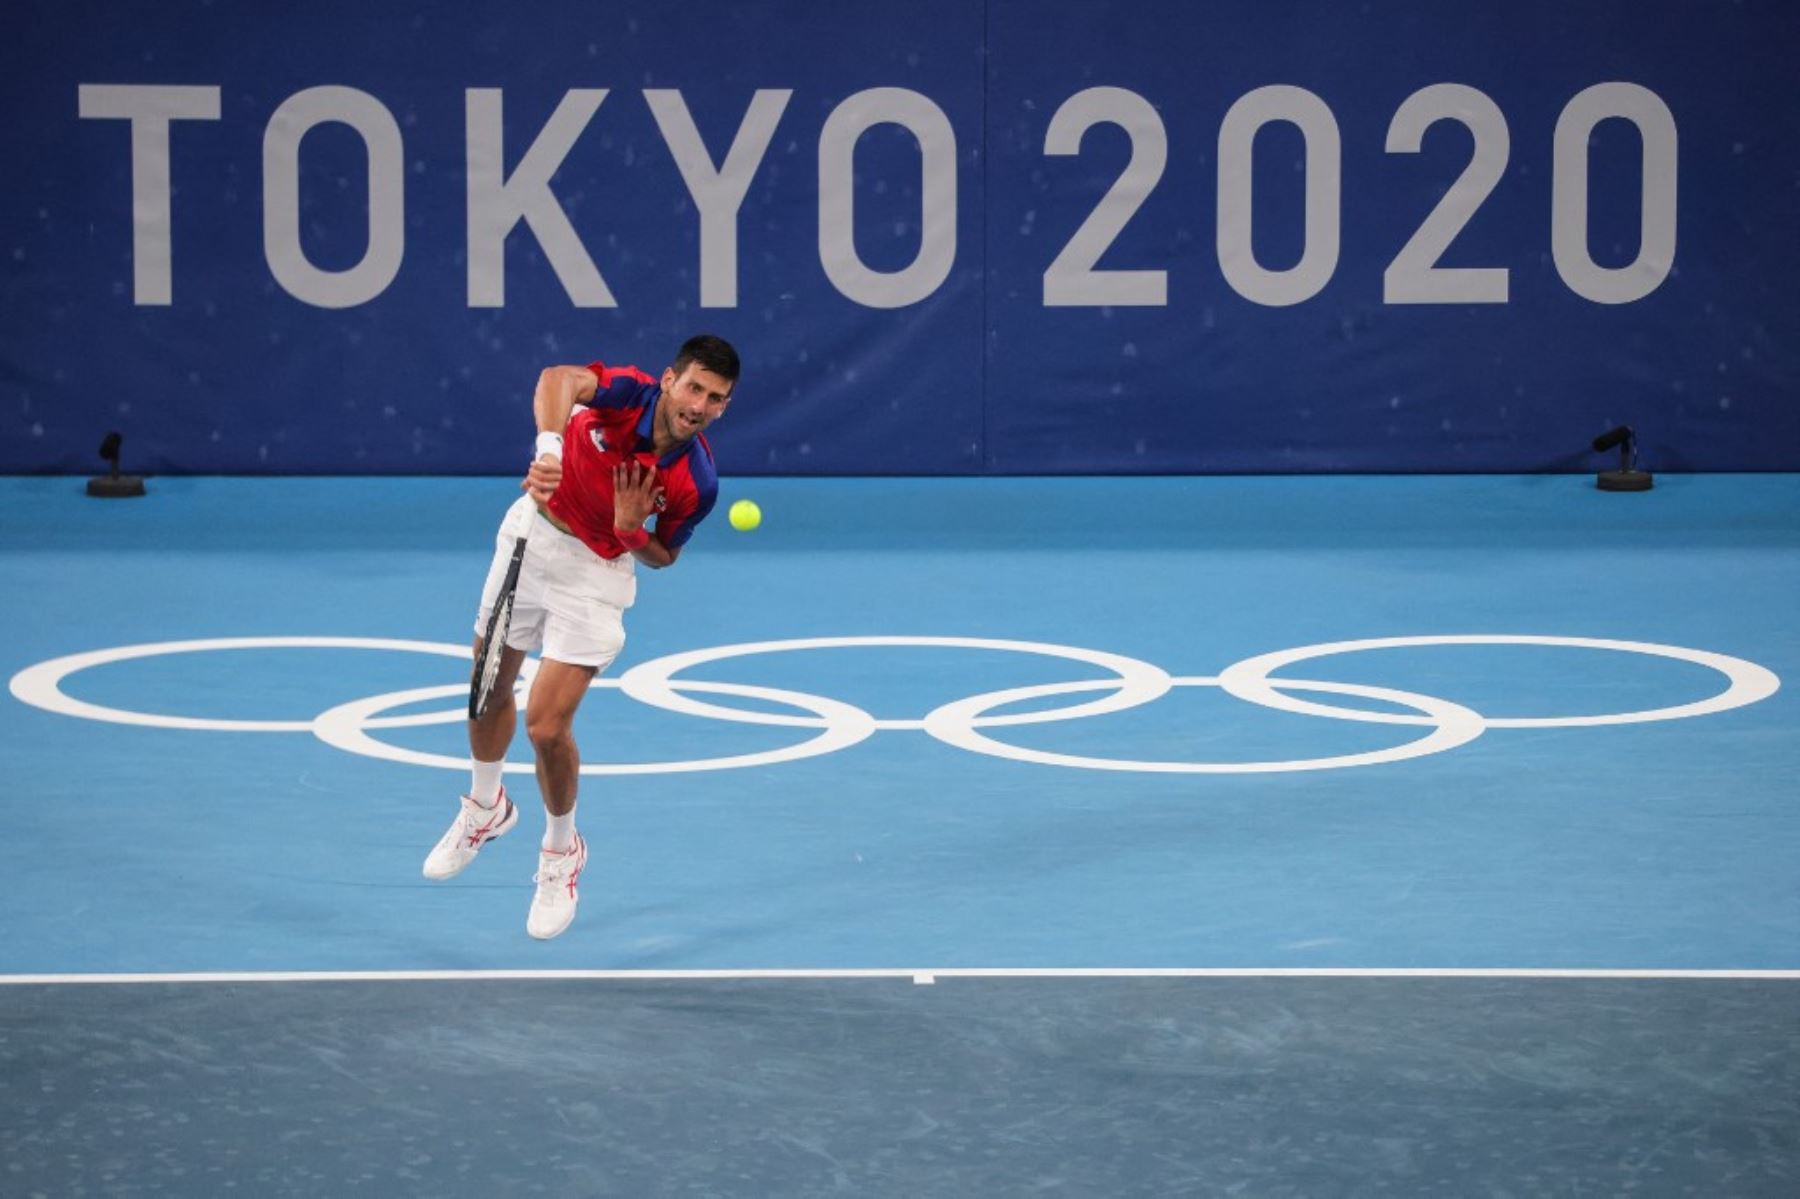 Tokio 2020: Tenis olímpico empezará más tarde debido al ...